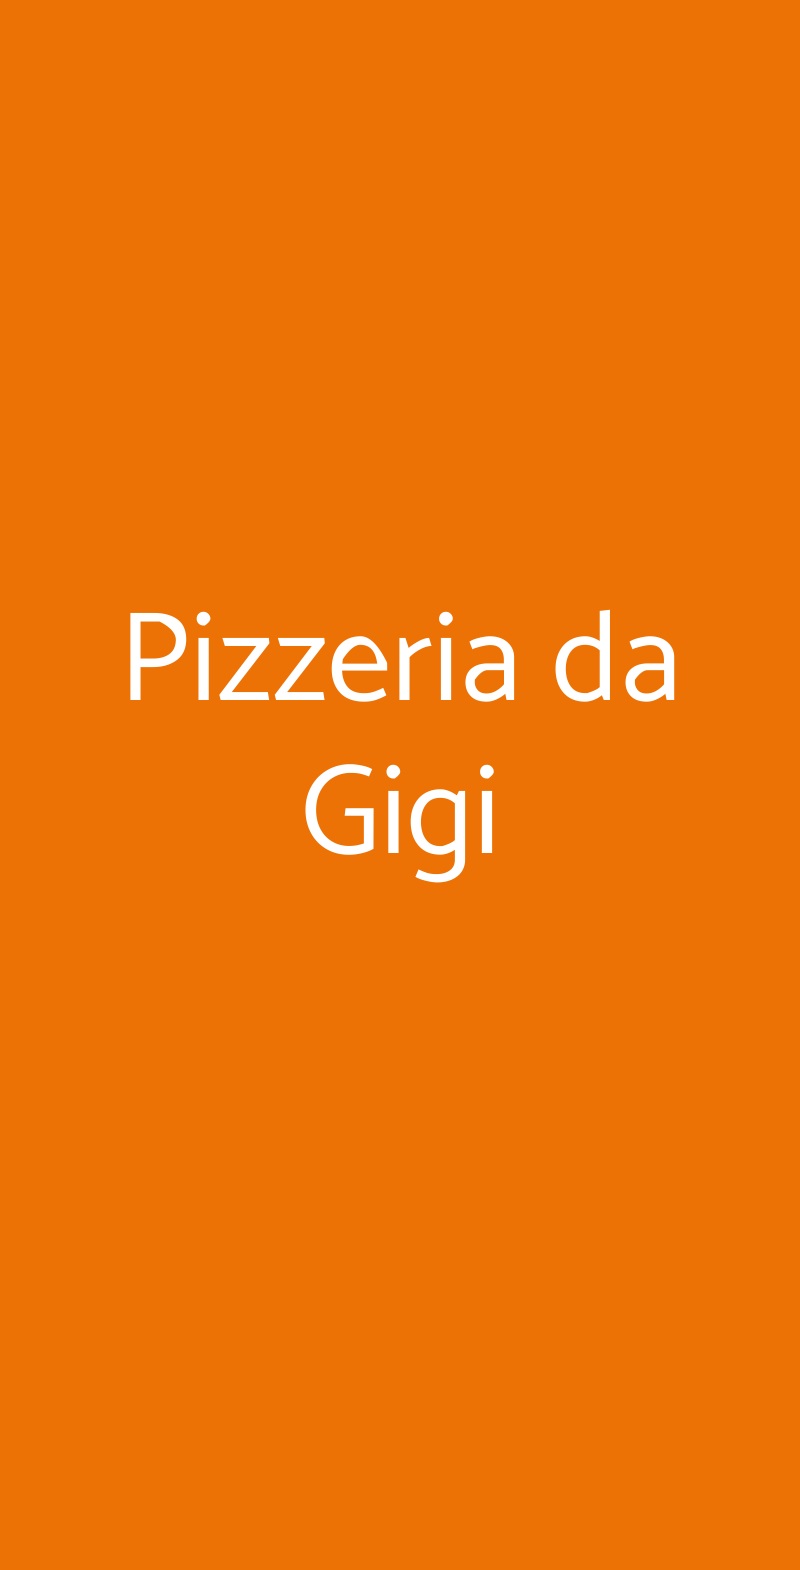 Pizzeria da Gigi Perugia menù 1 pagina